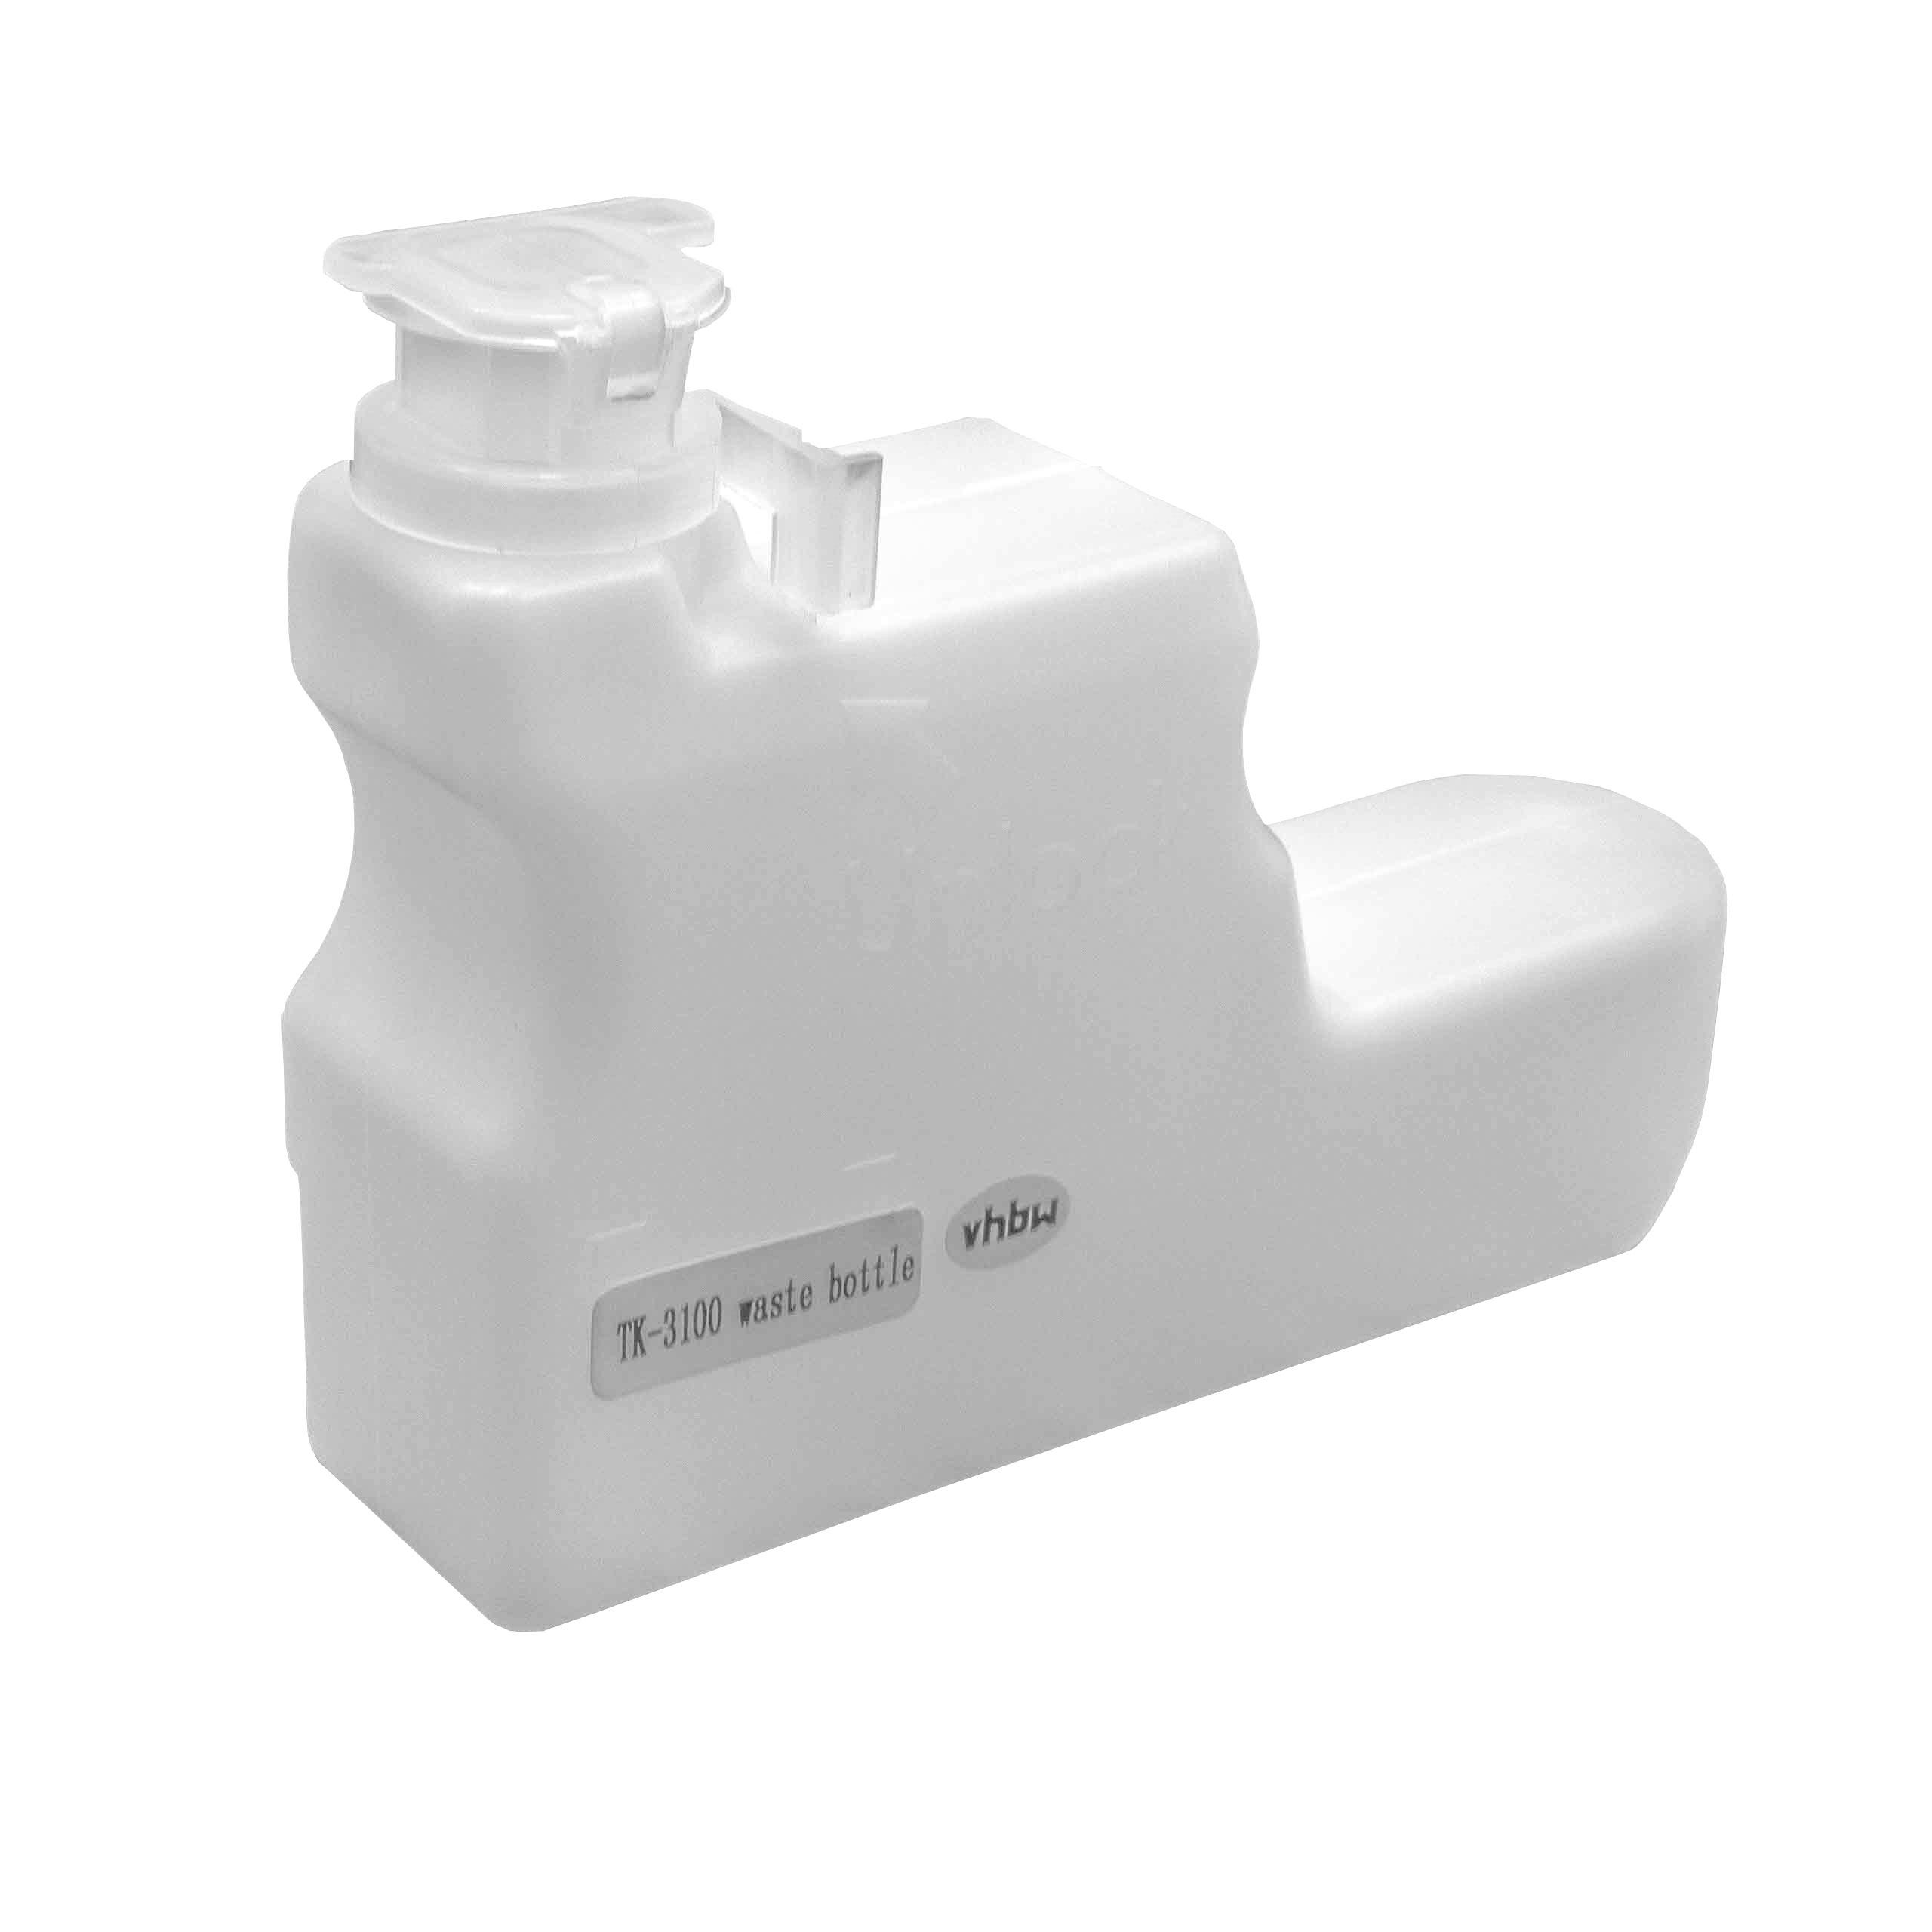 Depósito tóner reemplaza Kyocera WT-3100 para impresora Kyocera - blanco